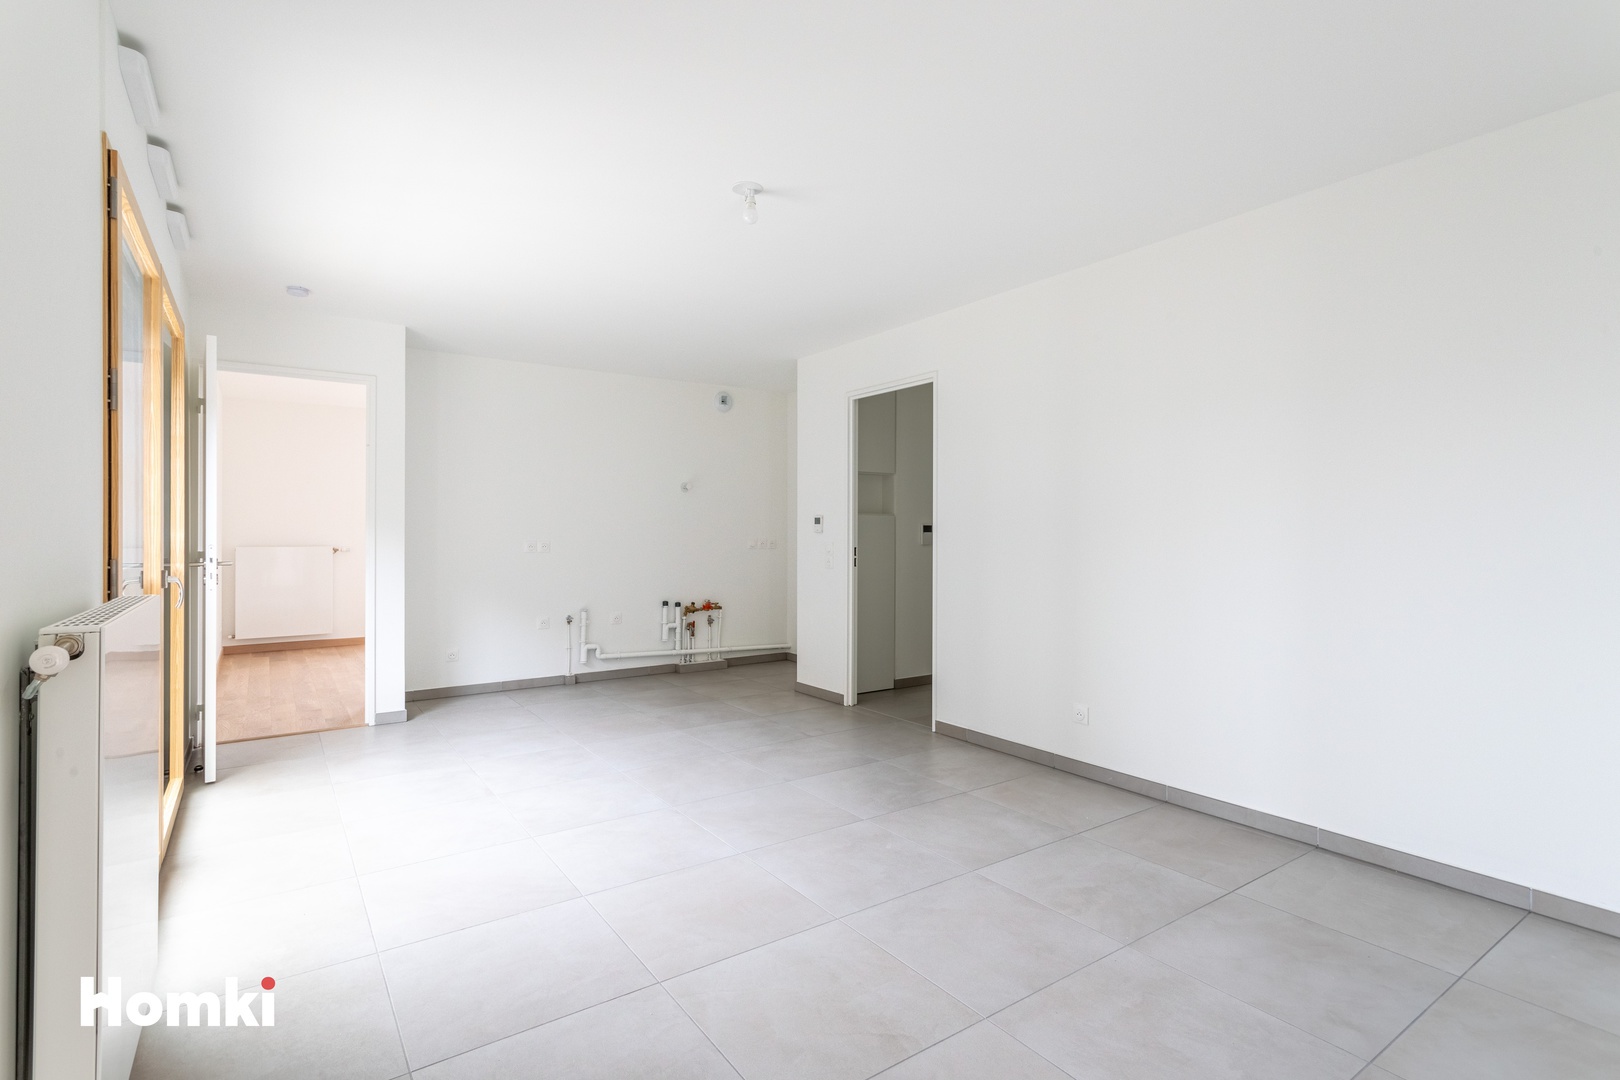 Homki - Vente Appartement  de 47.0 m² à Lyon 69003